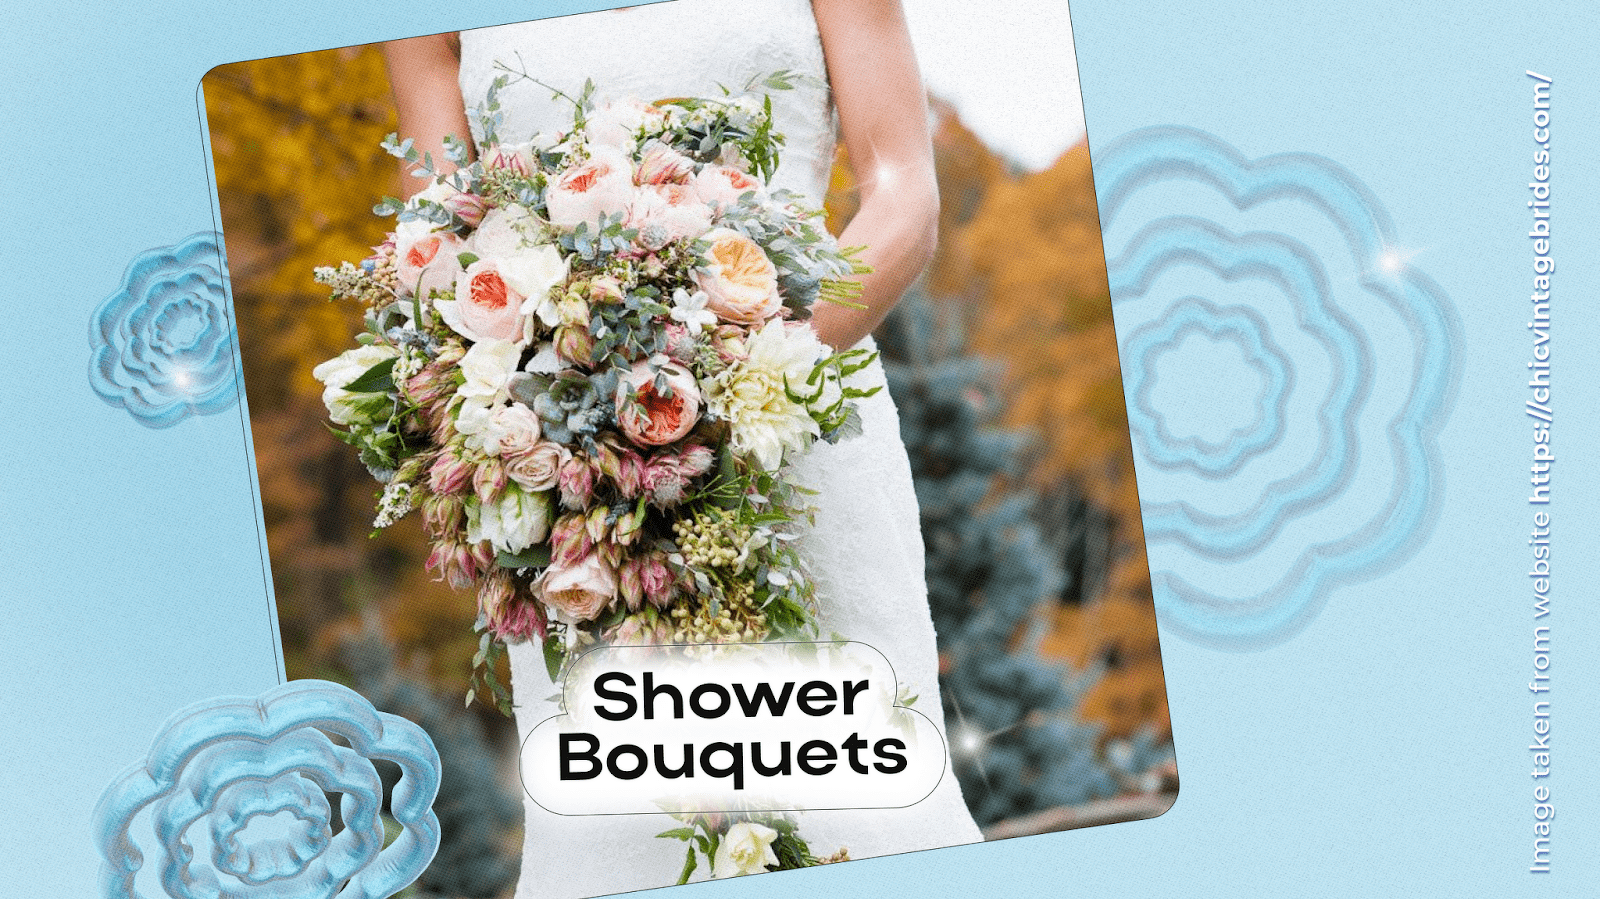 Shower Bouquets